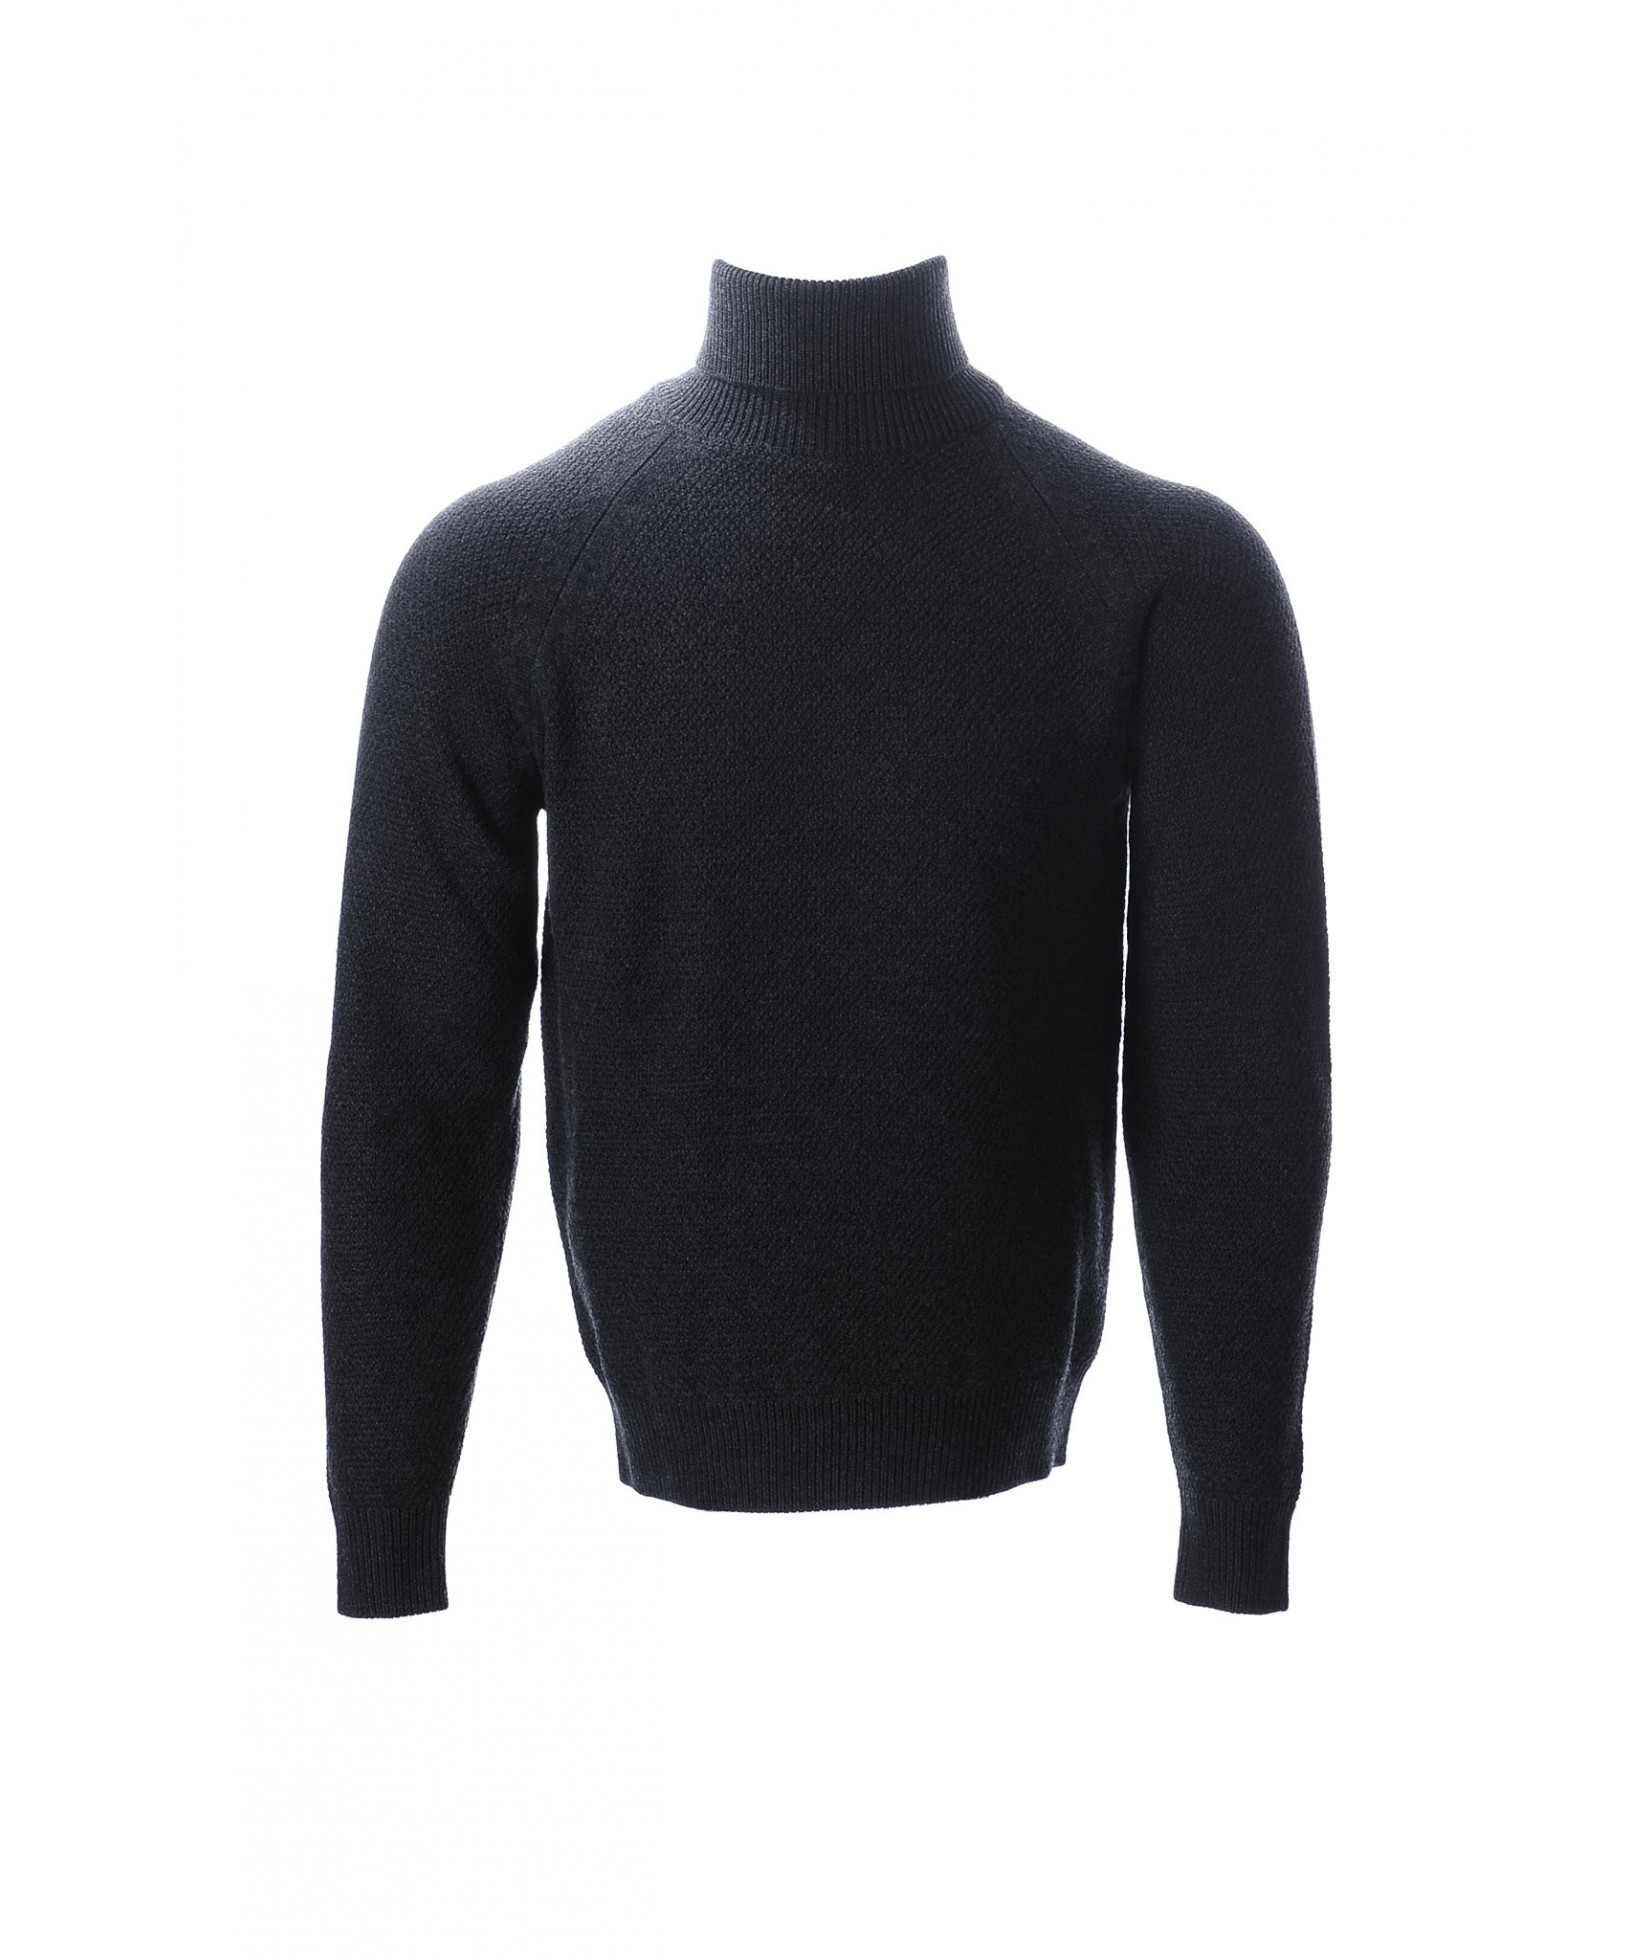 Jacob Cohën sweater donkergrijs (36300)